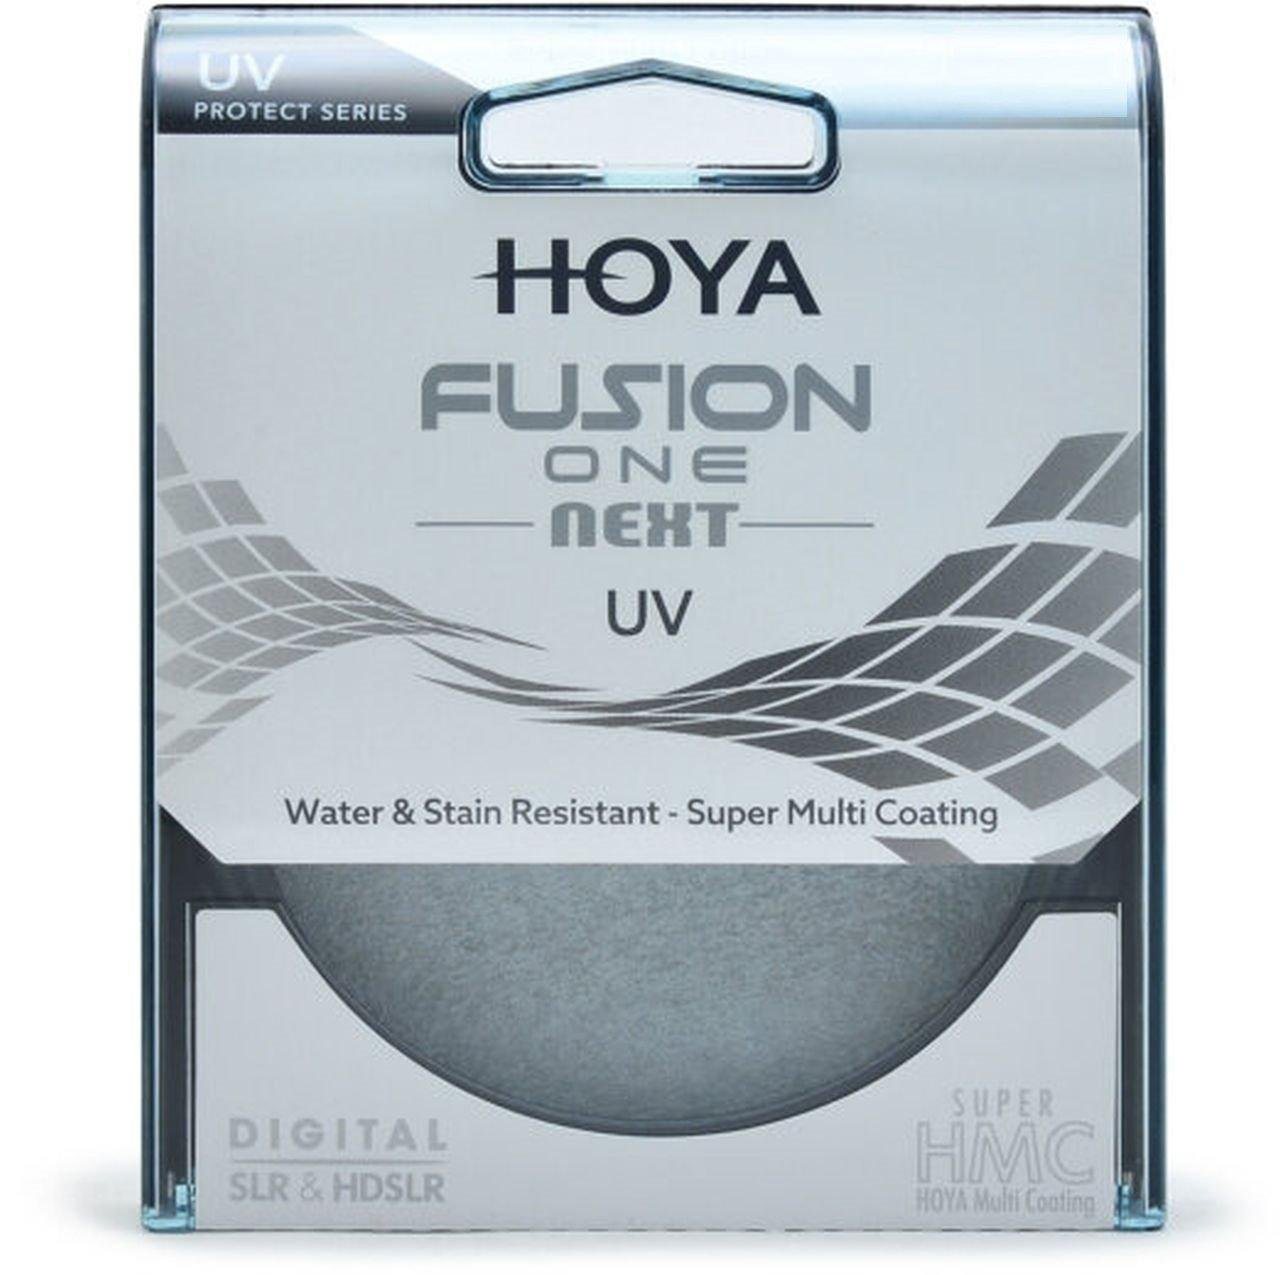 Hoya Fusion ONE Next UV-Filter 49mm Objektivzubehör von Hoya